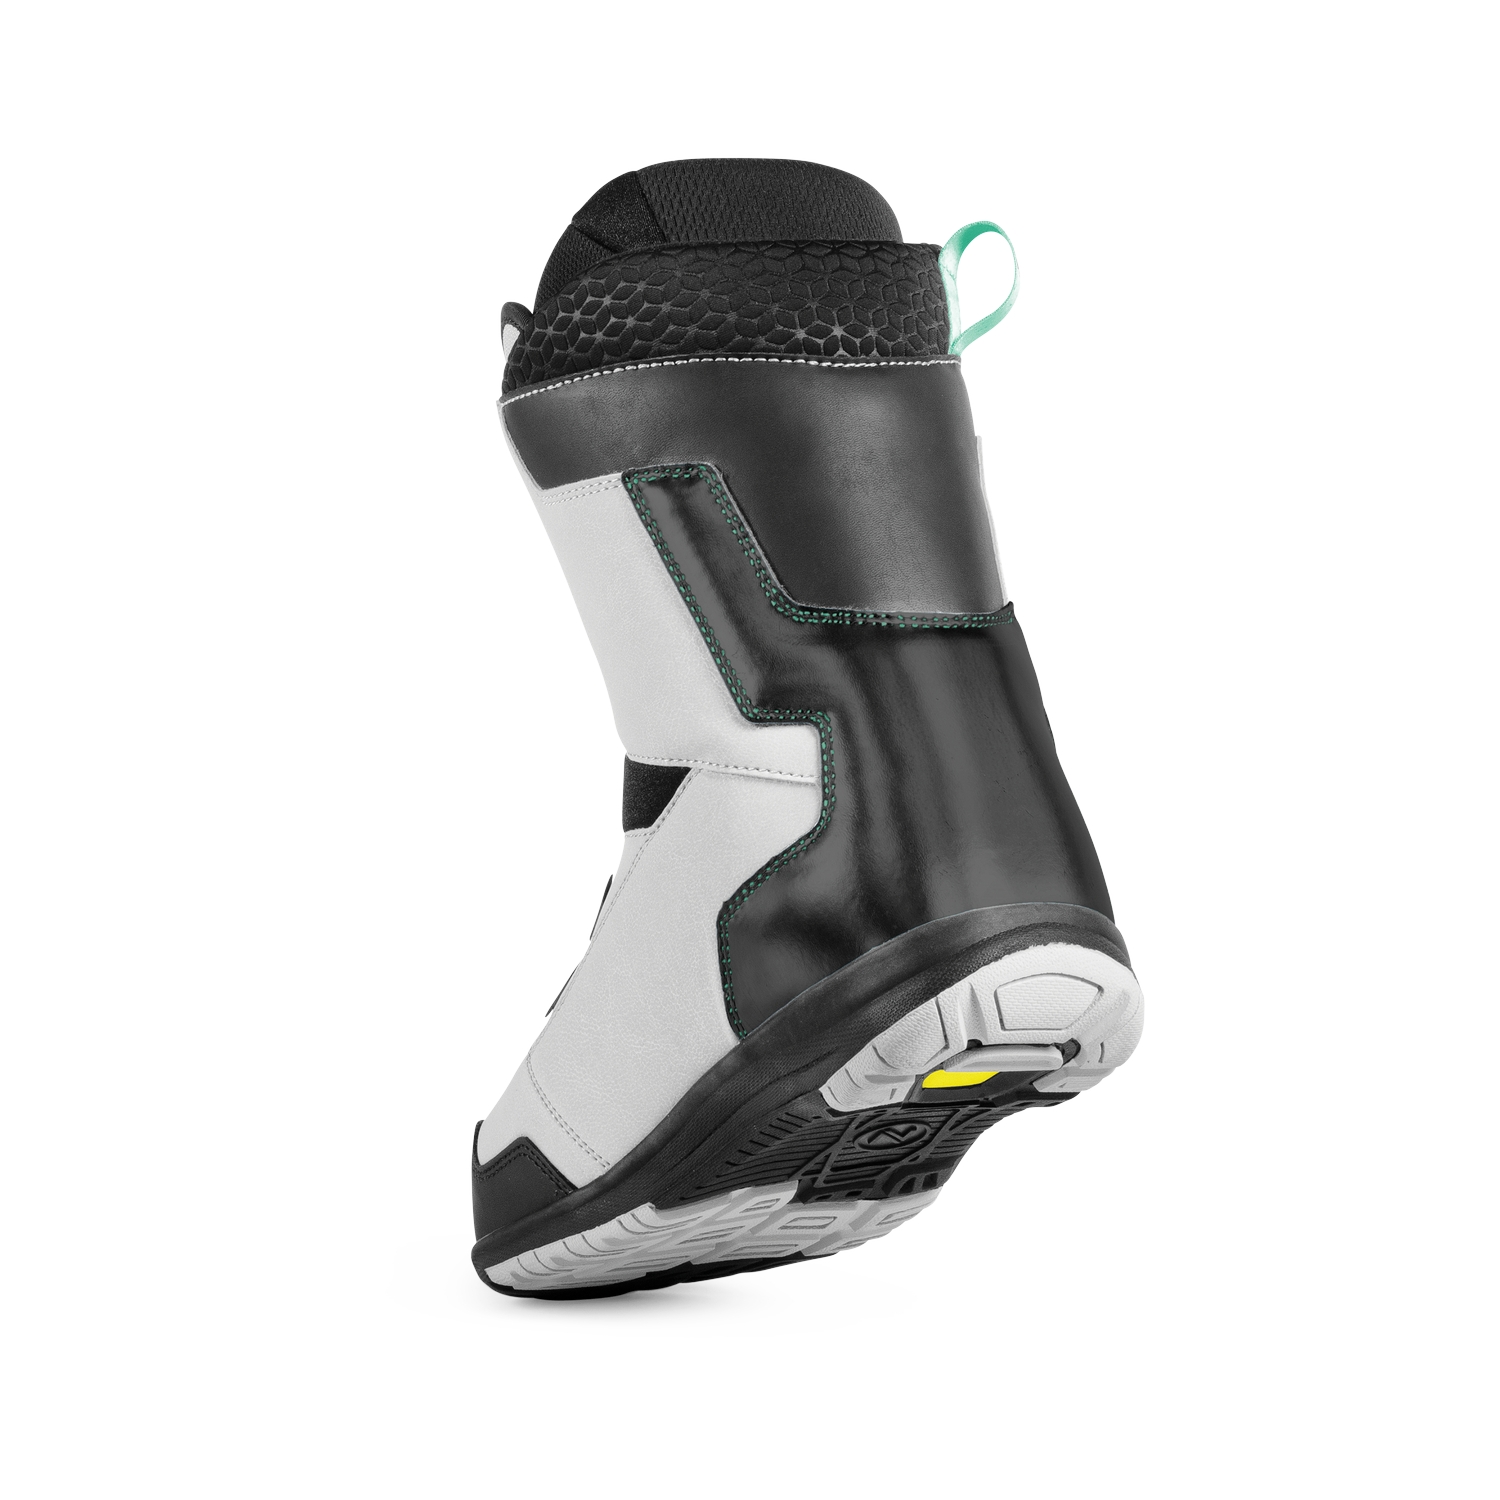 Ботинки для сноуборда NIDECKER 2018-19 Onyx Boa Coil Grey/Aqua